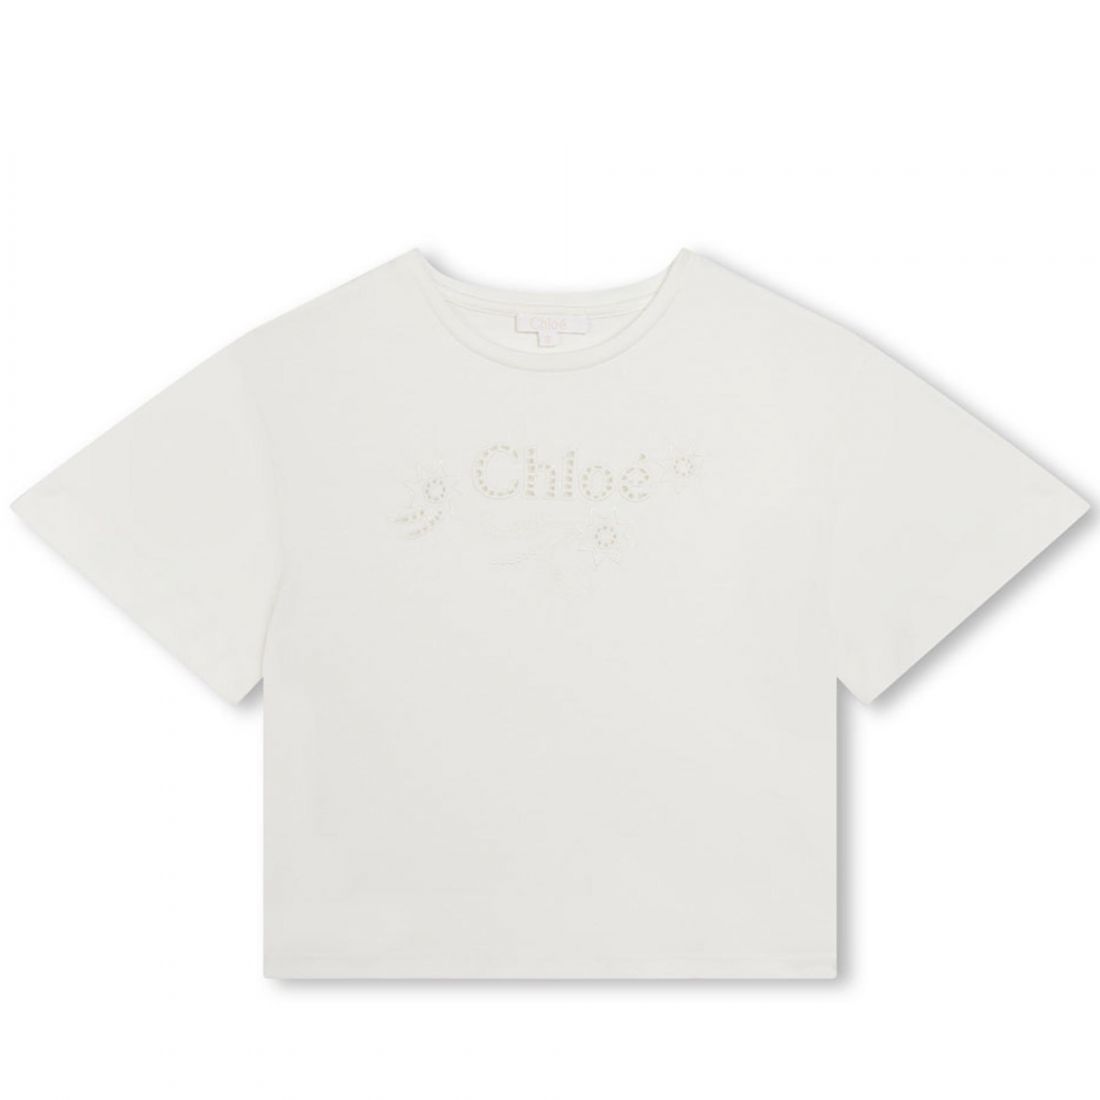 Παιδική μπλούζα Chloé